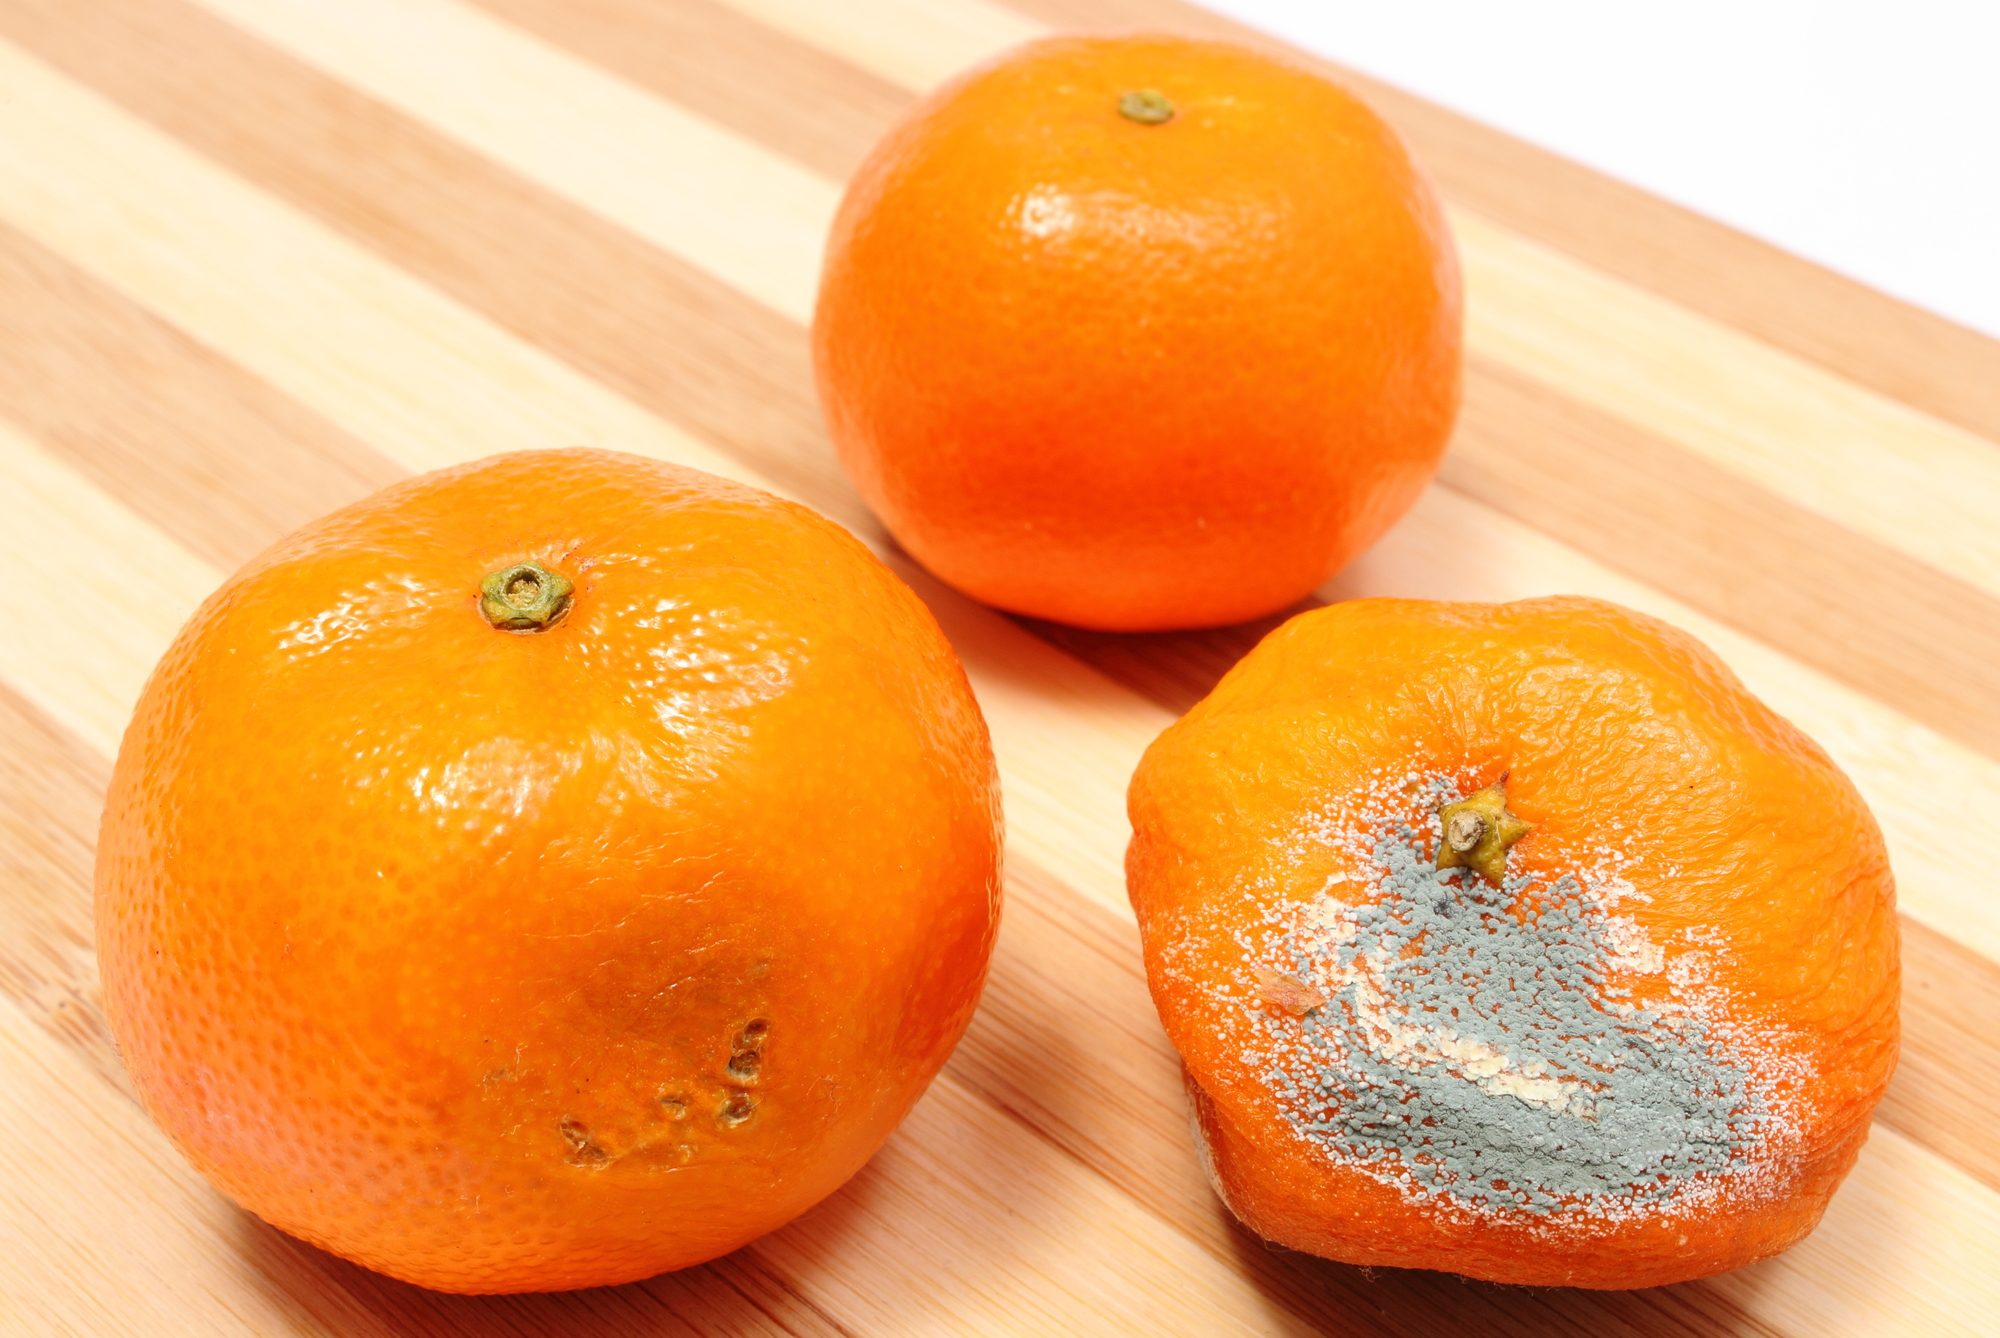 В пакете лежала мандарина. Плесень на мандарине. Плесень на апельсине. Испорченные мандарины. Плесень на фруктах.